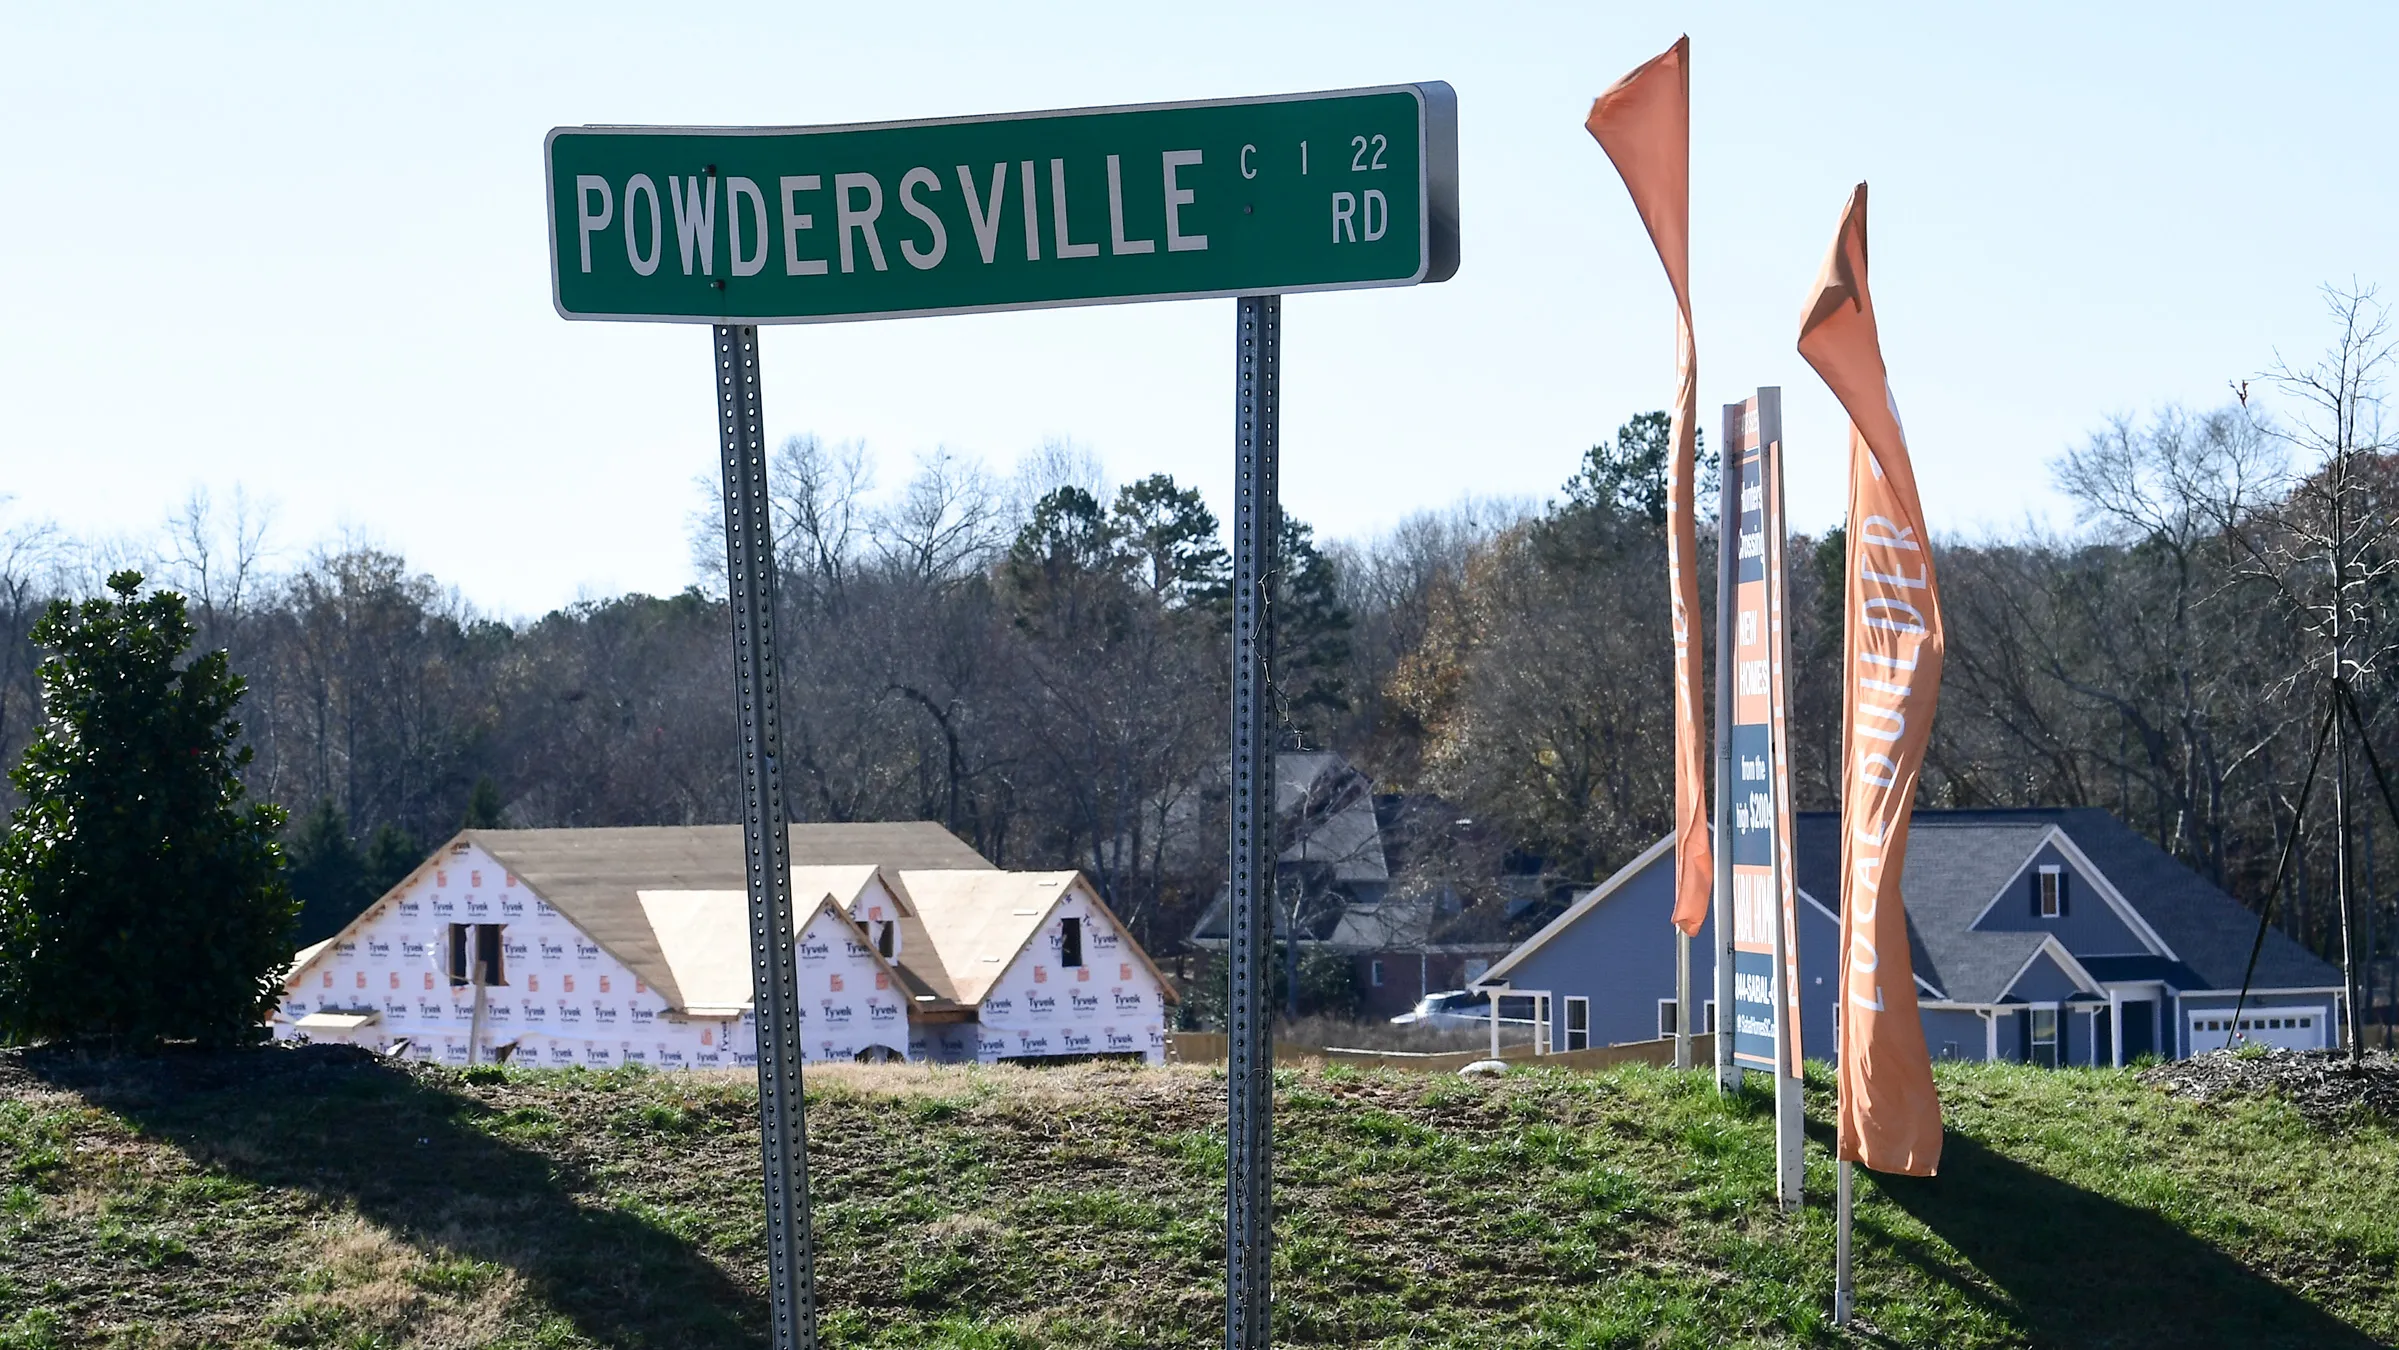 Powdersville